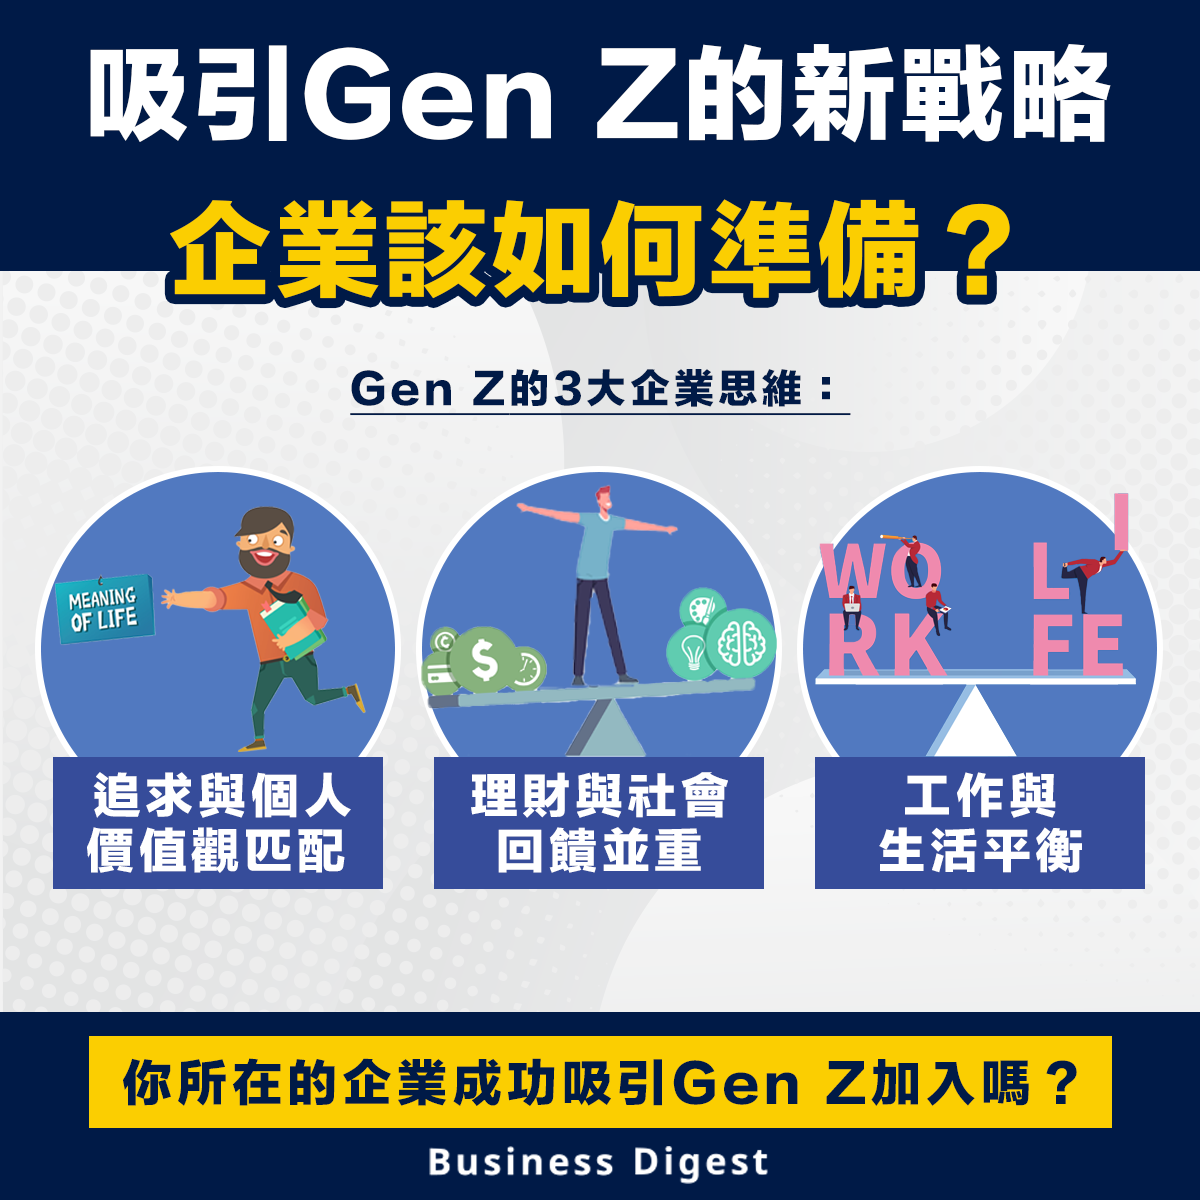 【職場智慧】吸引Gen Z的新戰略，企業該如何準備？ New strategies to attract Gen Z: How should companies prepare?